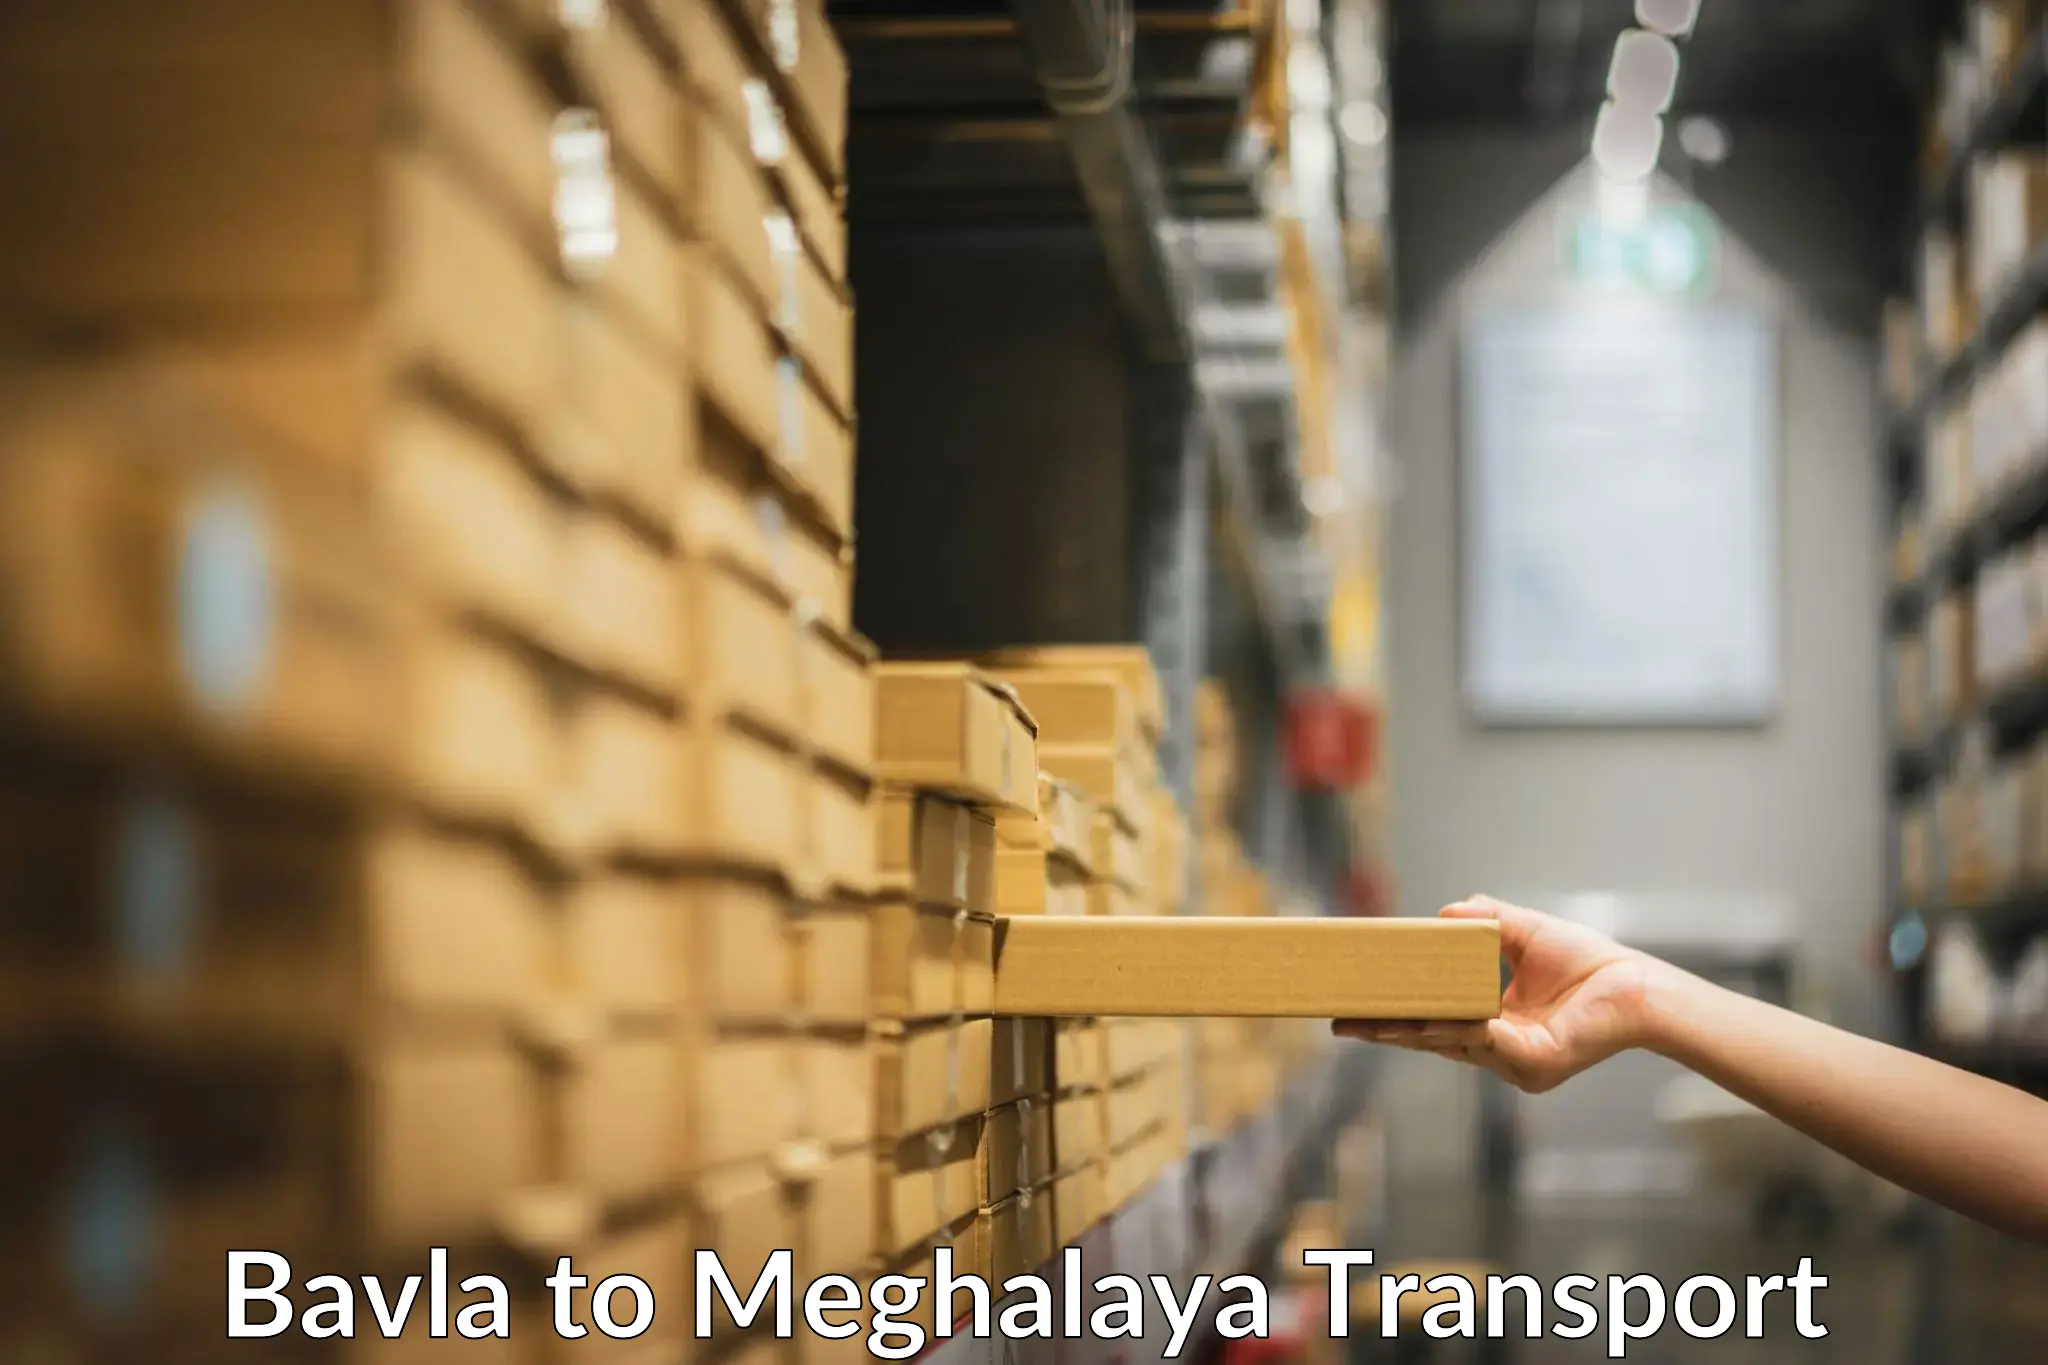 Nearby transport service Bavla to NIT Meghalaya